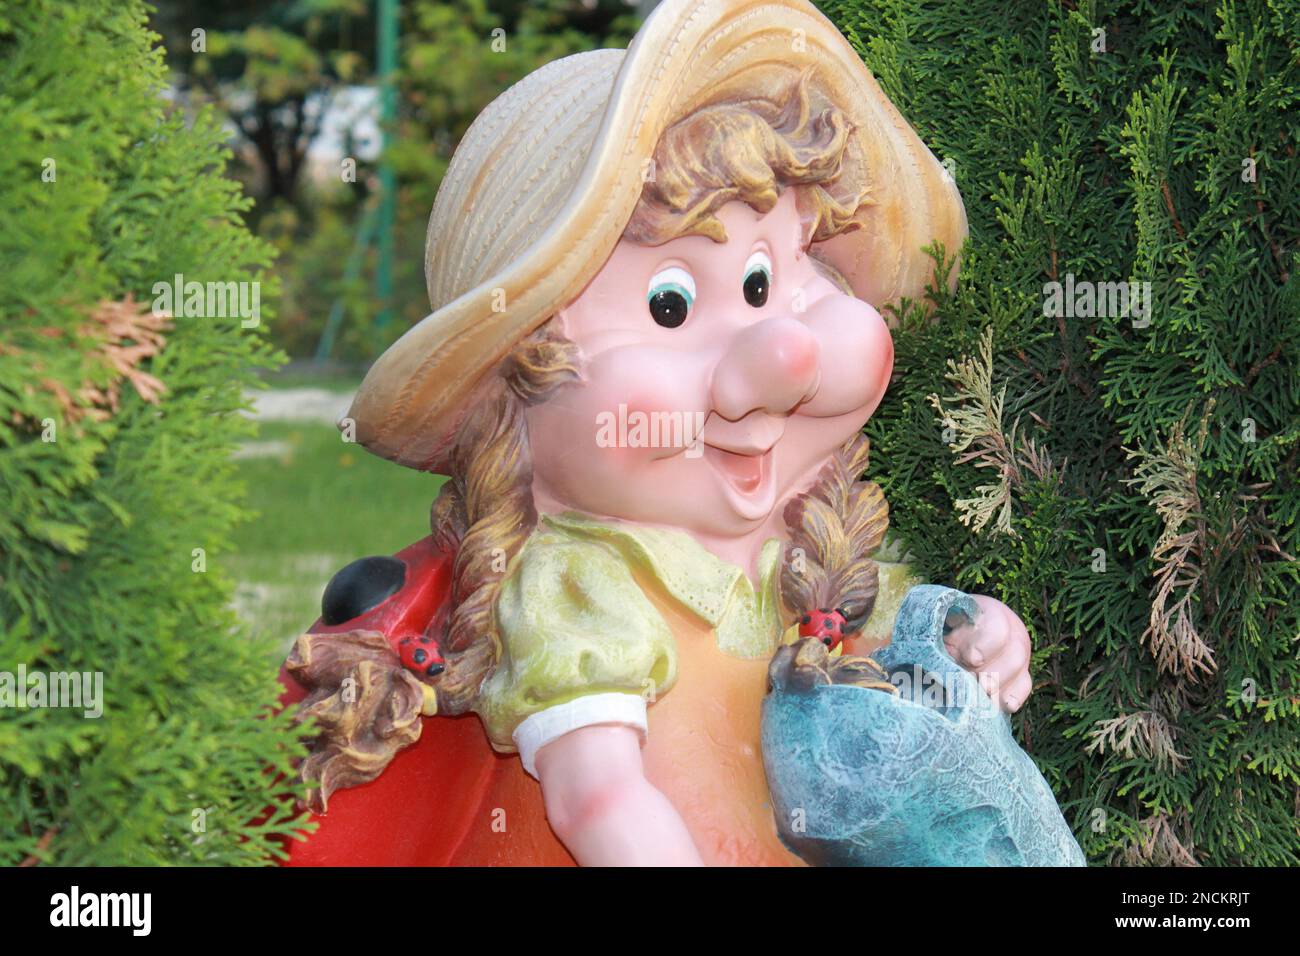 La figure de jardin est une femme naine proche entre les arbres verts, le gnome a un grand sourire Banque D'Images